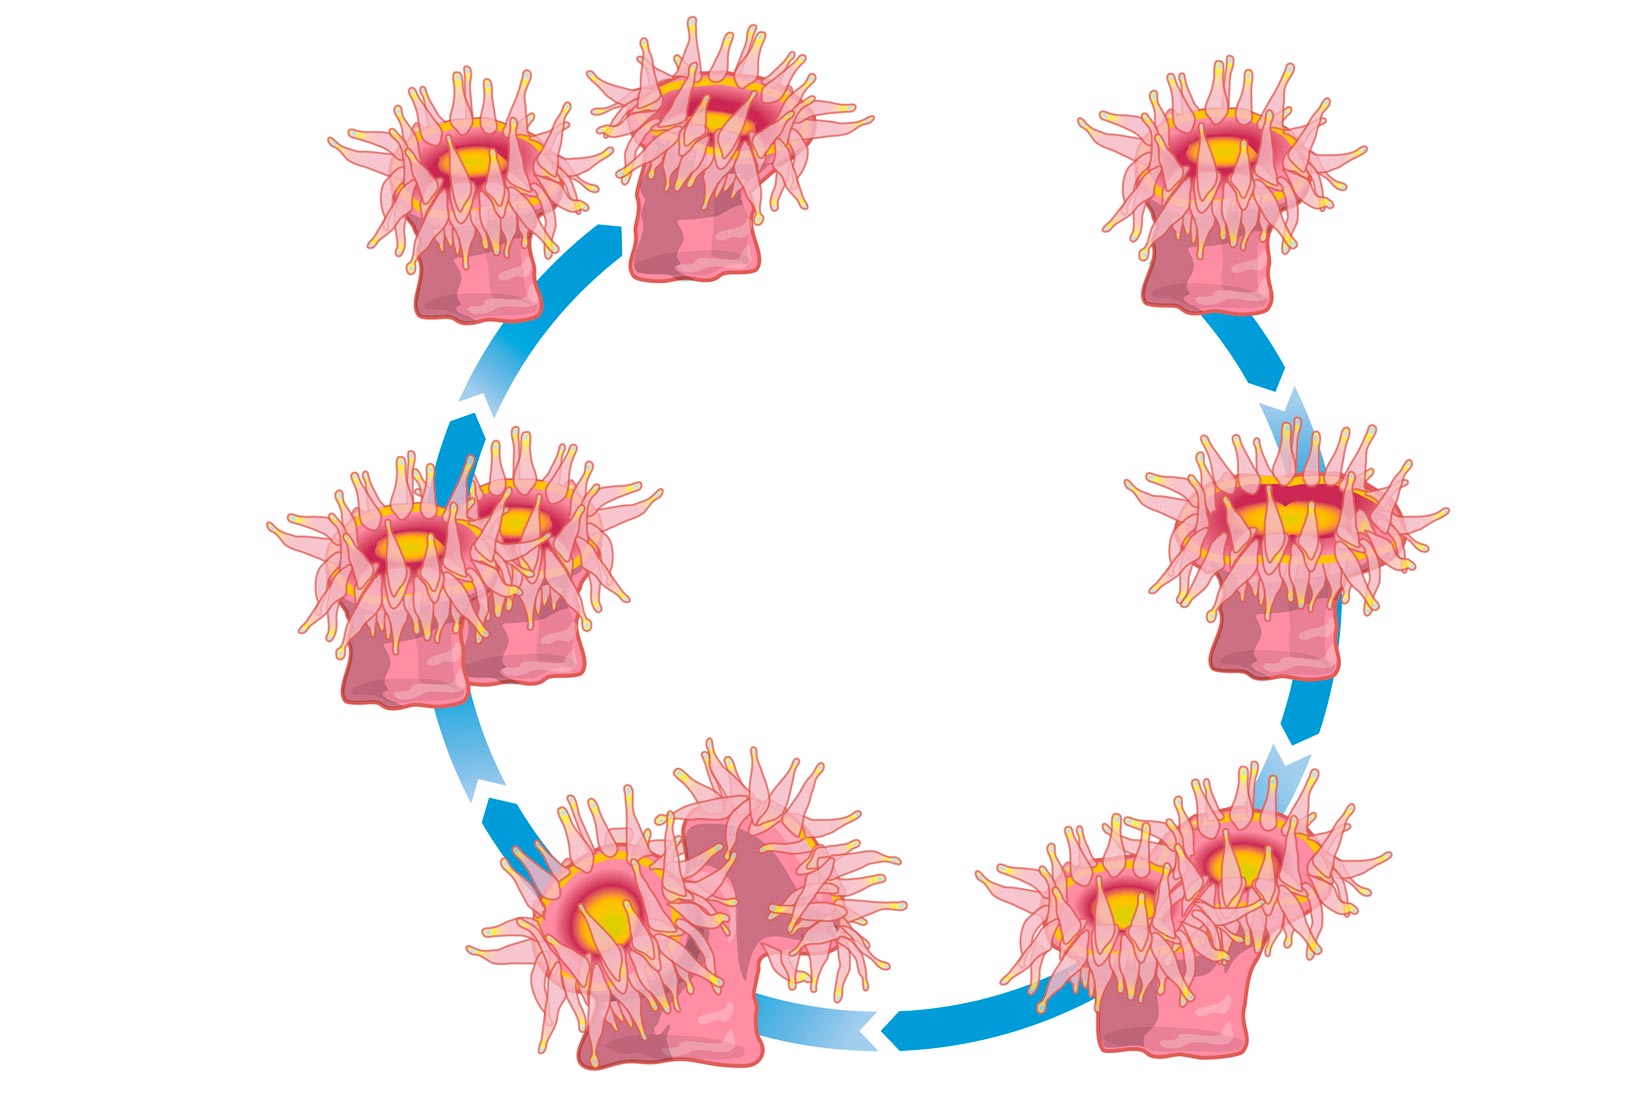 Slika prikazuje pupanje žarnjaka u 6 etapa koje prikazane u krugu.U svakoj etapi dolazi do nastajanja drugog identičnog tijela žanjaka koje se postepeno razdvaja.